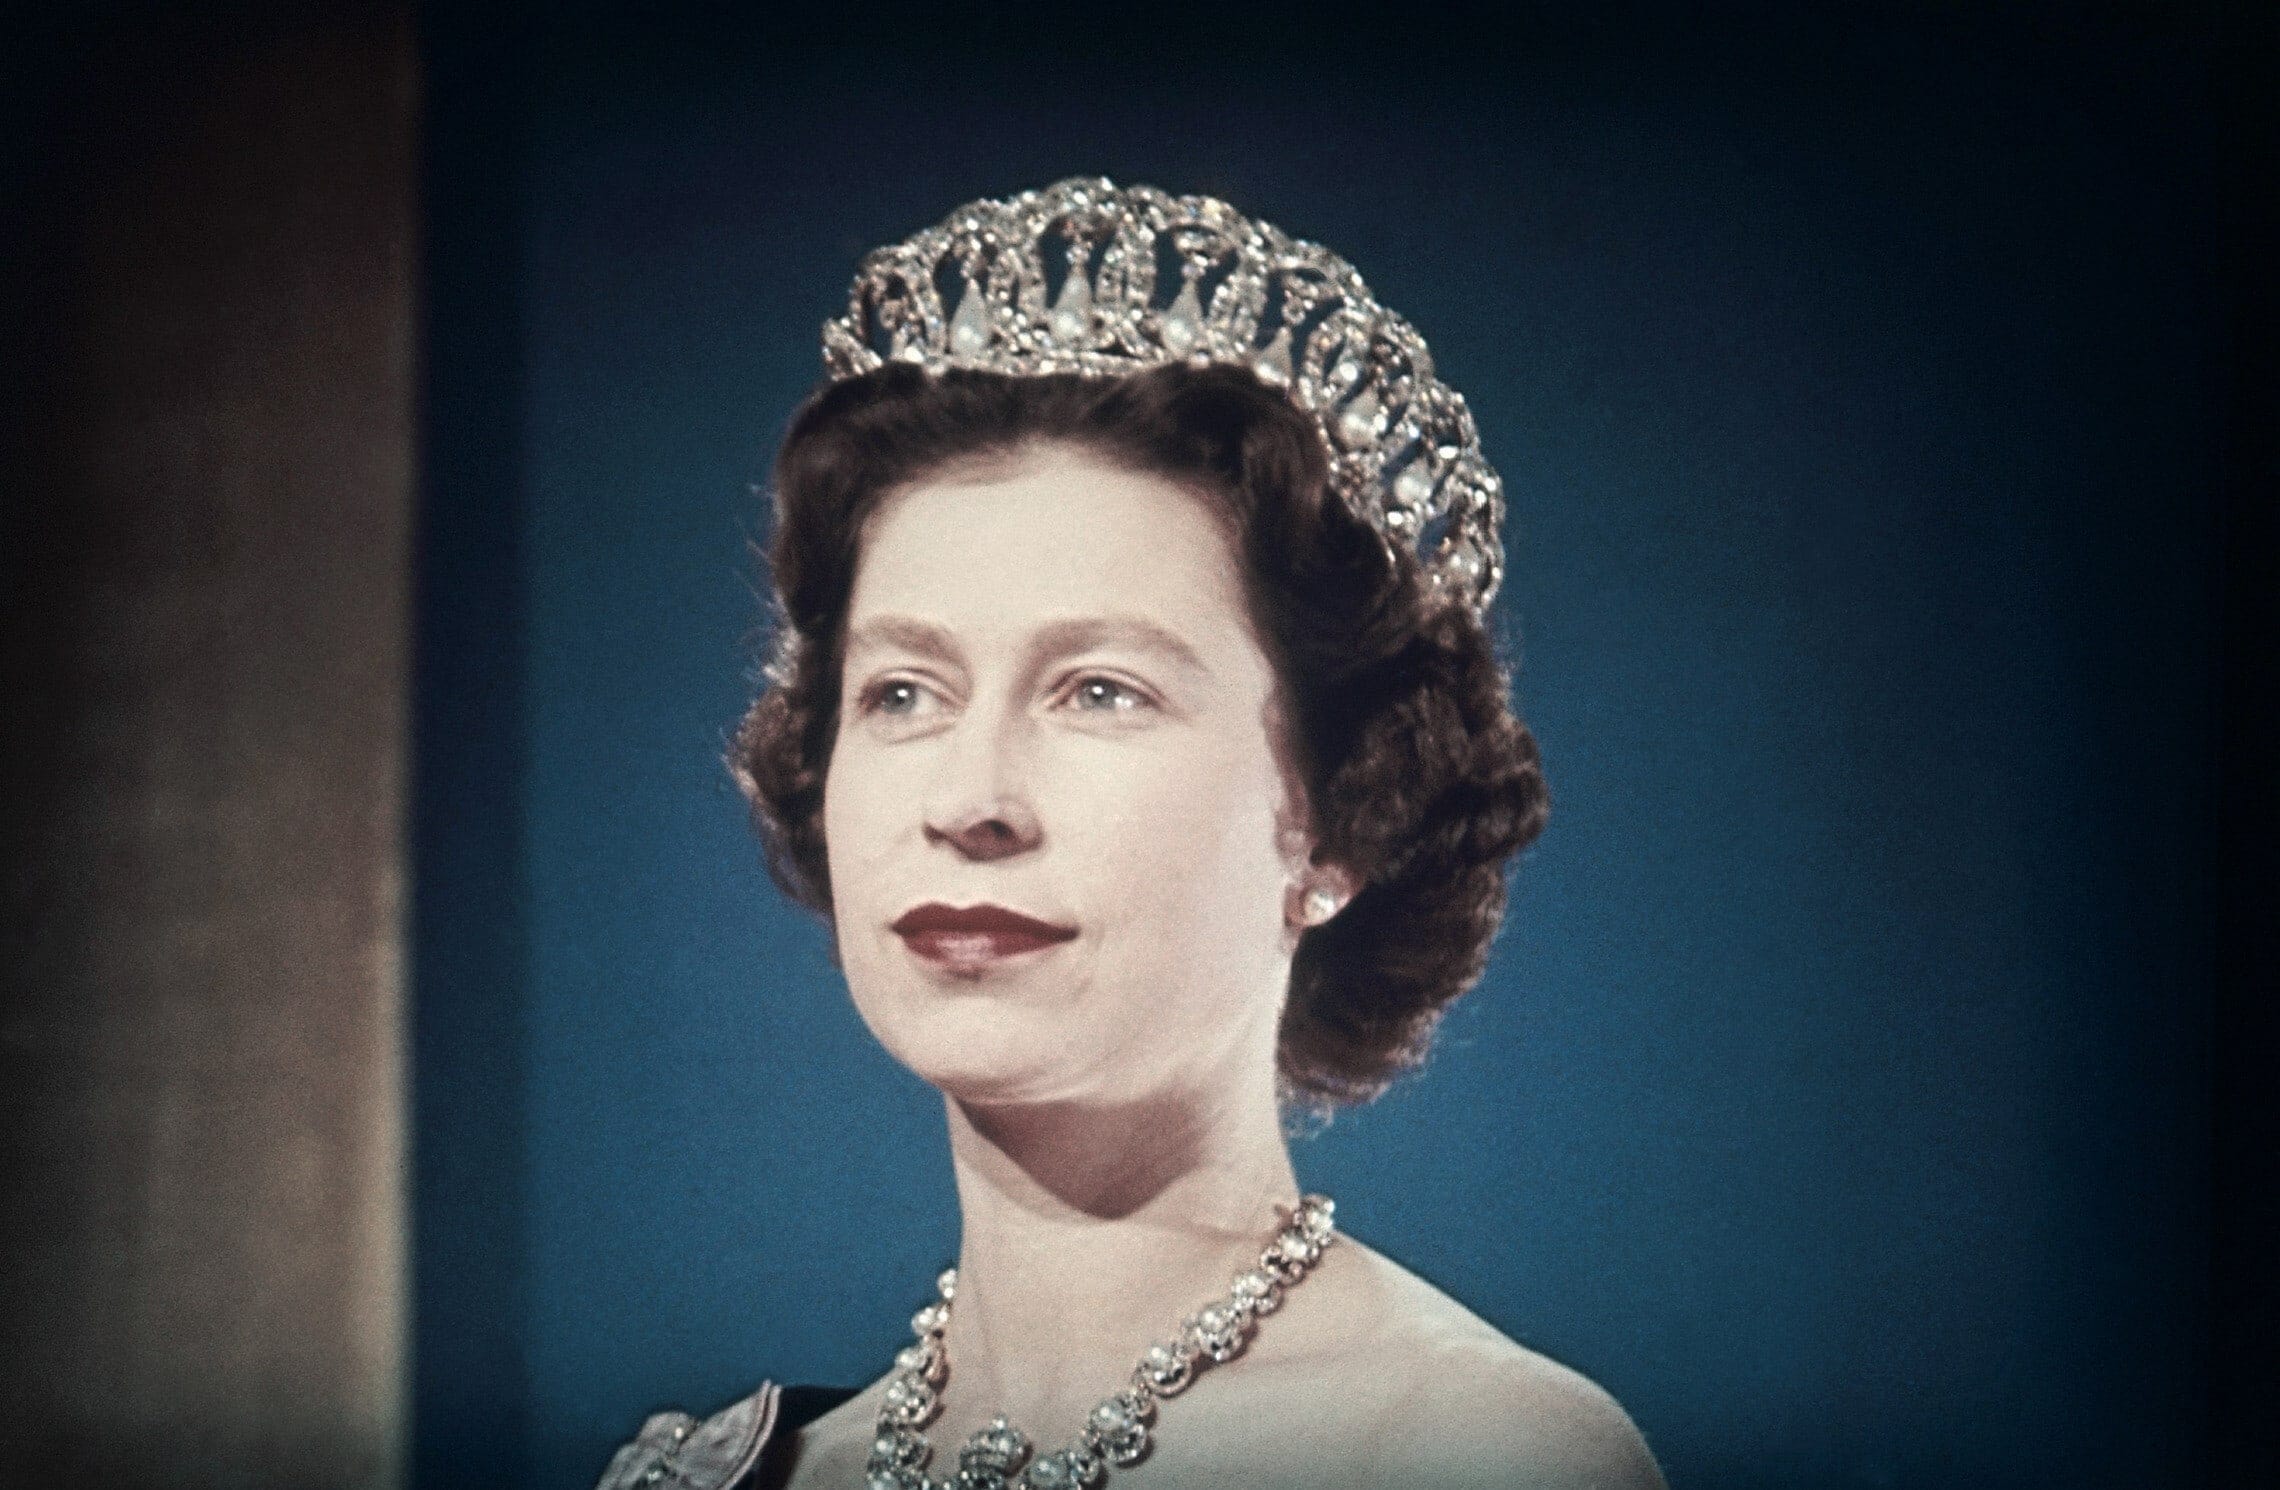 מלכת בריטניה אליזבת השנייה ב-1960 (צילום: AP Photo)